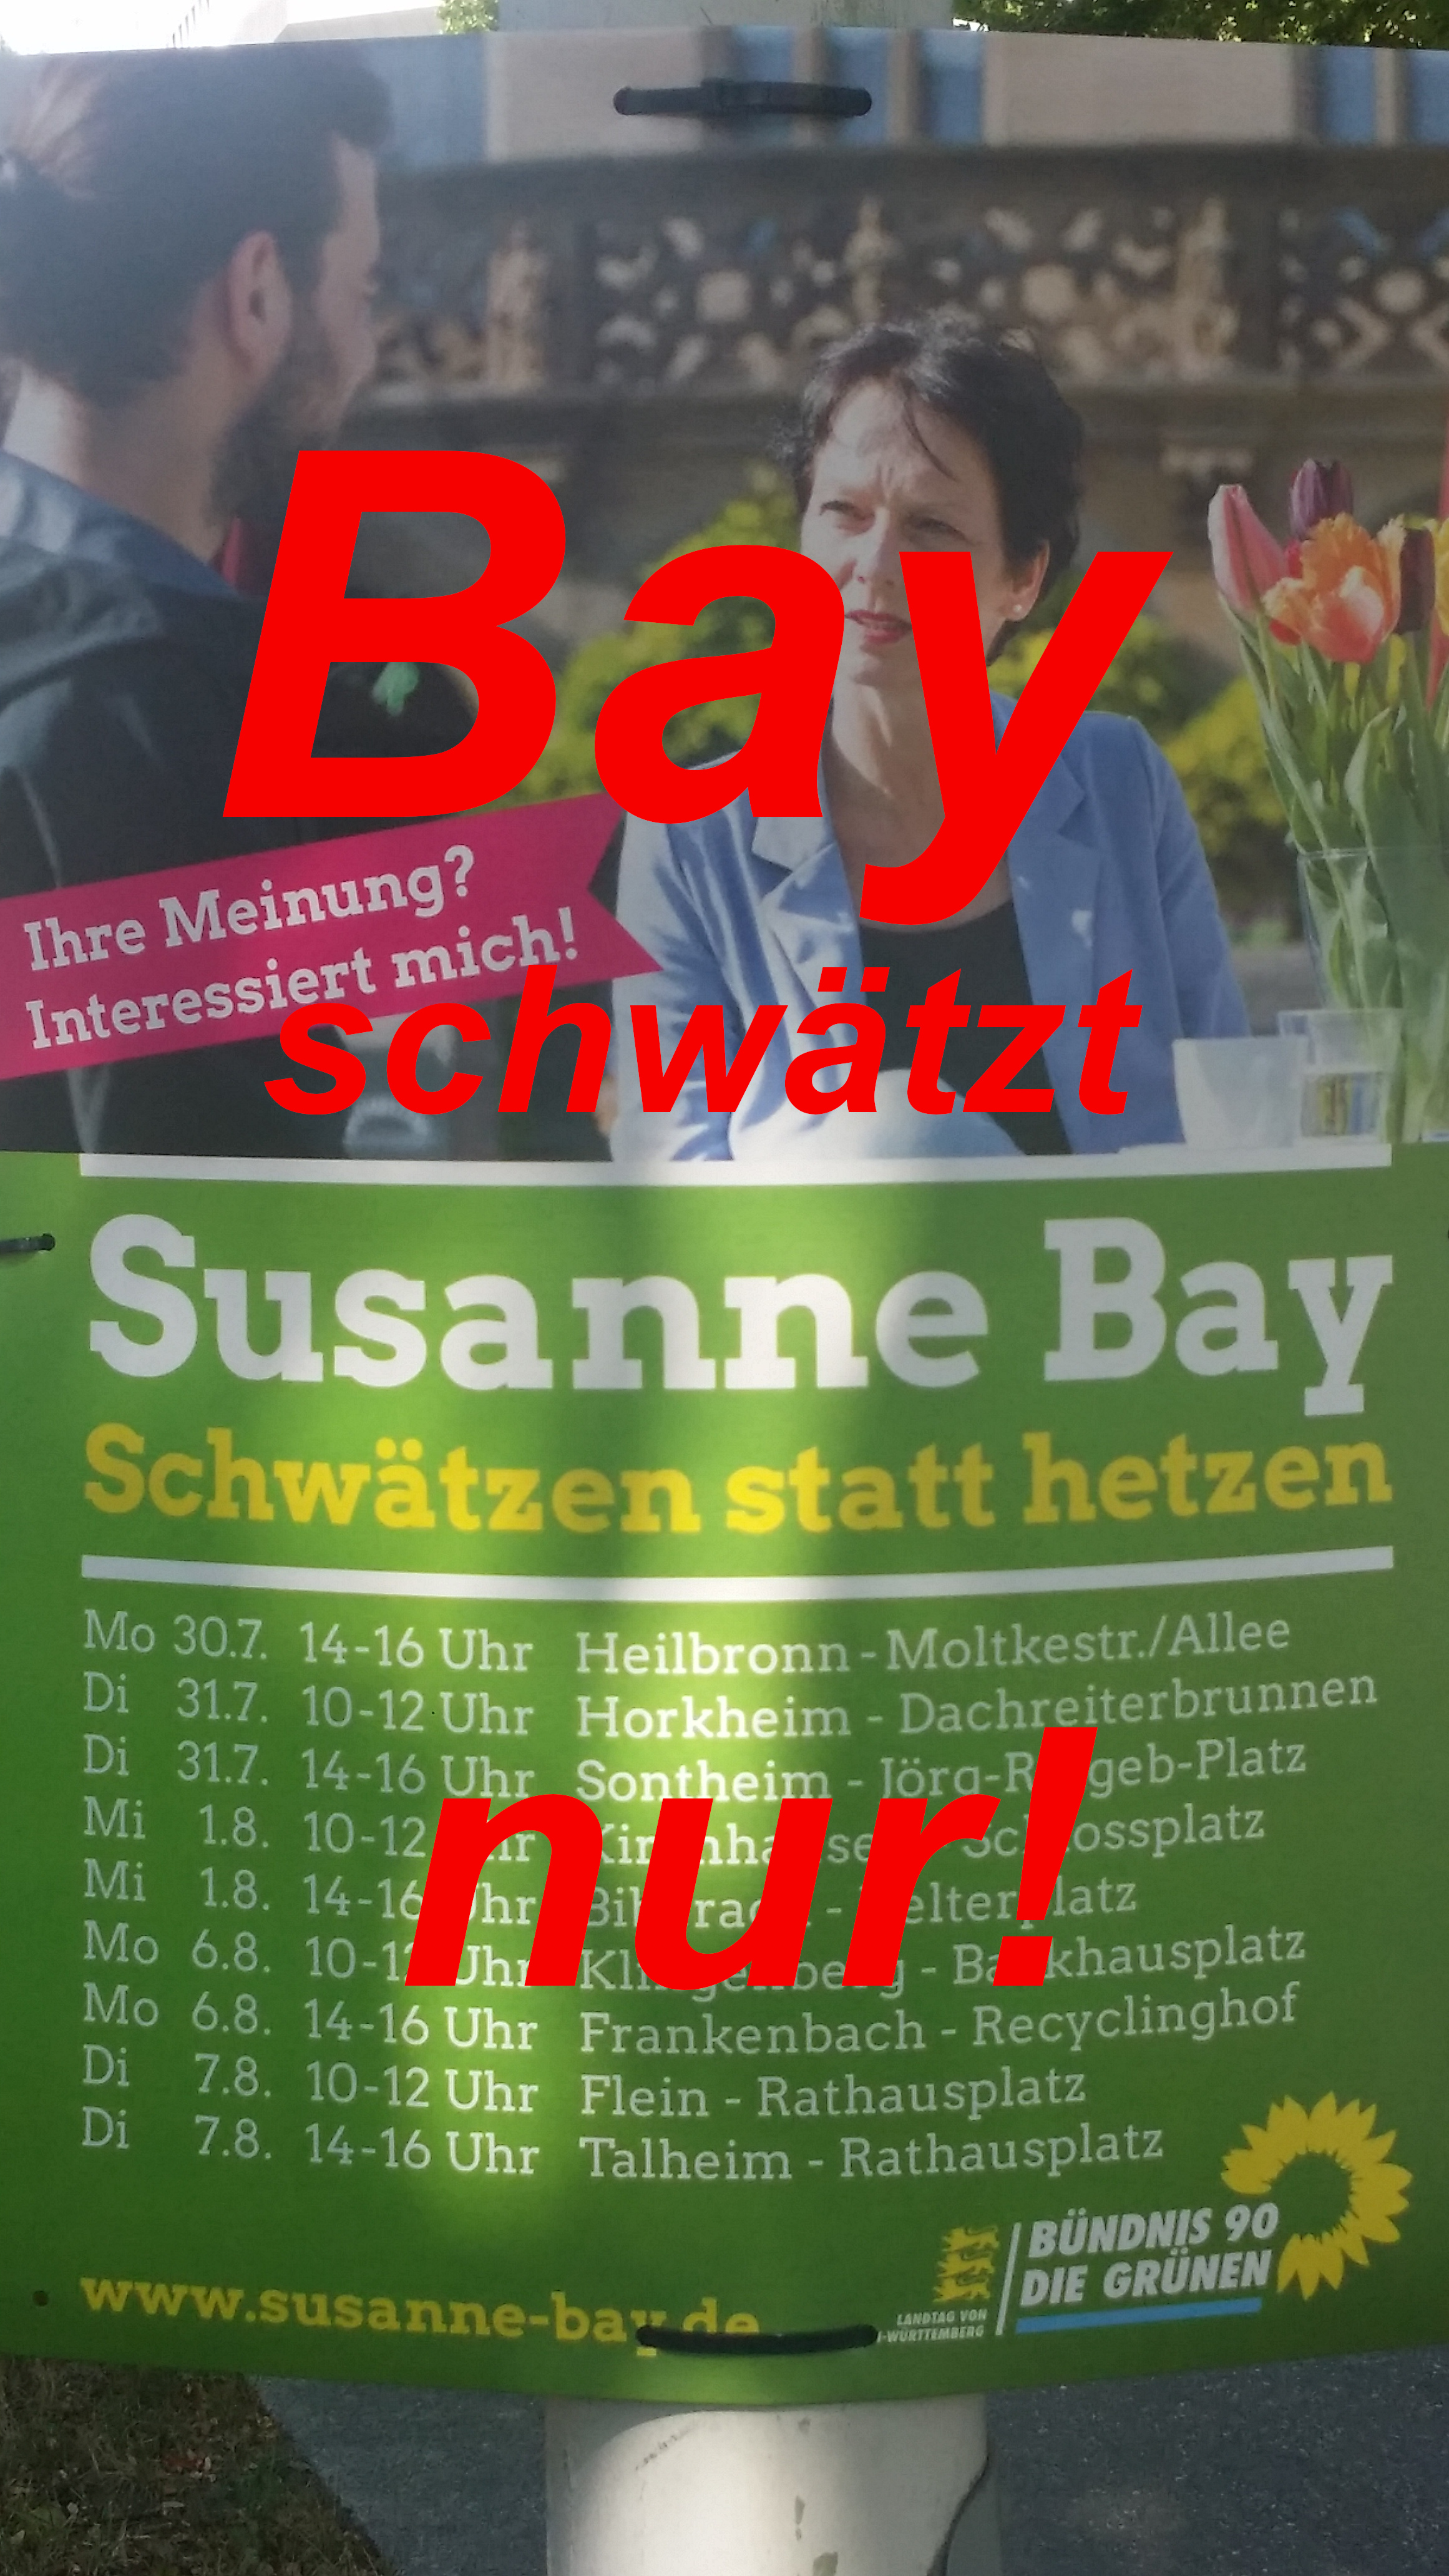 (Erneut) Am Pranger im Monat August 2018: Susanne Bay – unsägliche, direkt gewählte Grünen-Landtagsabgeordnete für den Wahlkreis Heilbronn